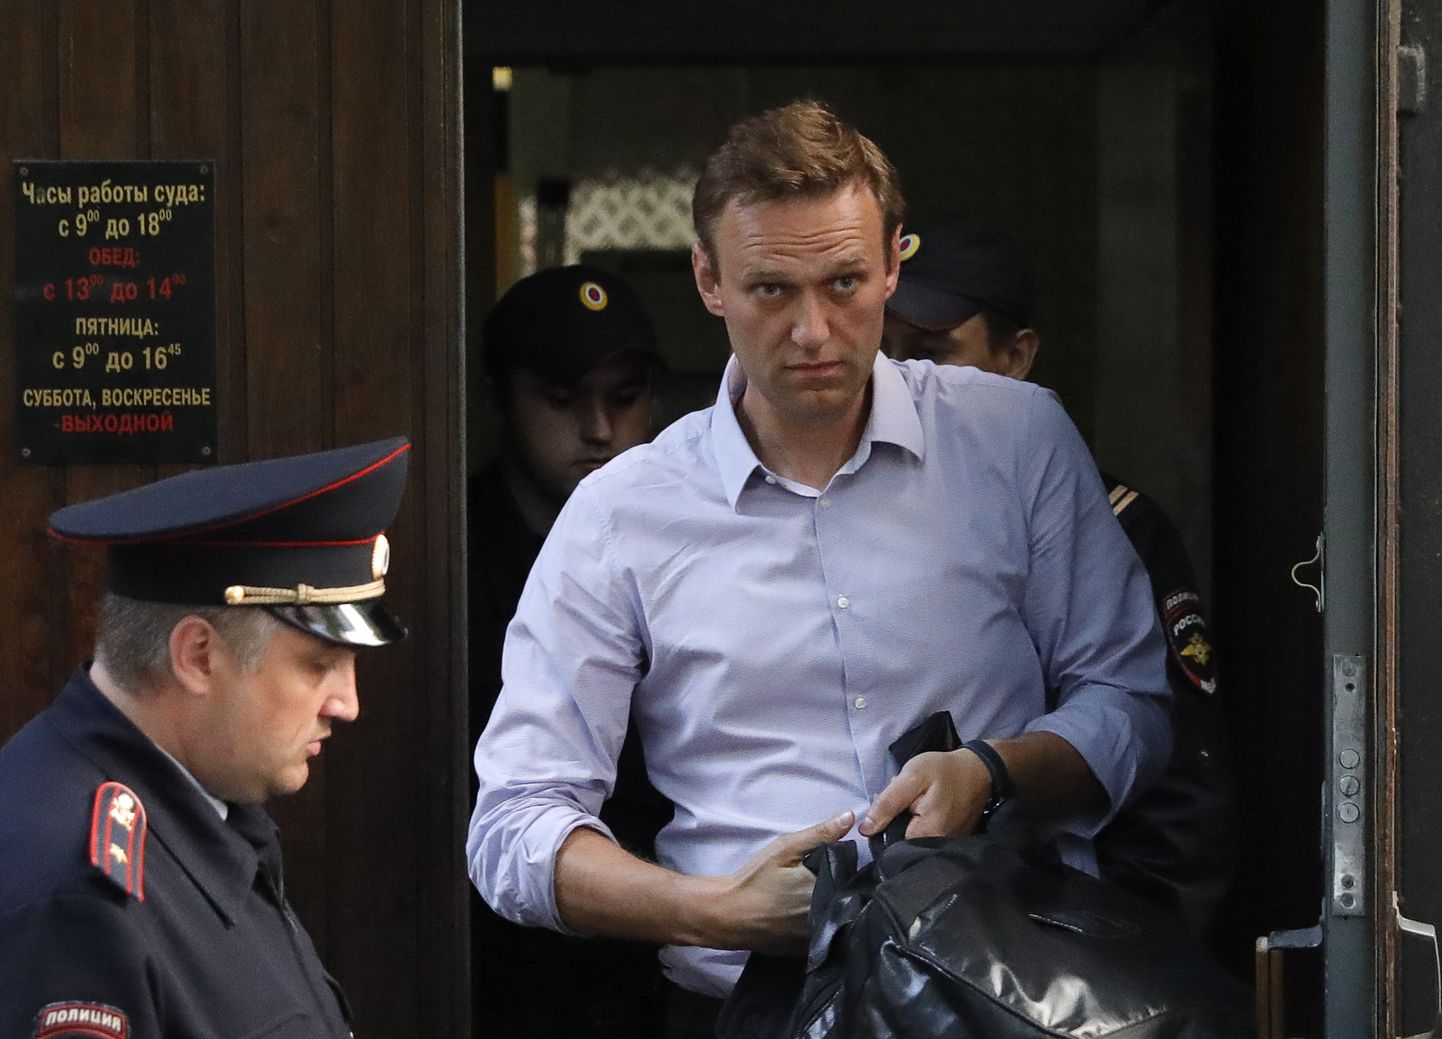 Aleksei Navalnõi kohtust lahkumas.